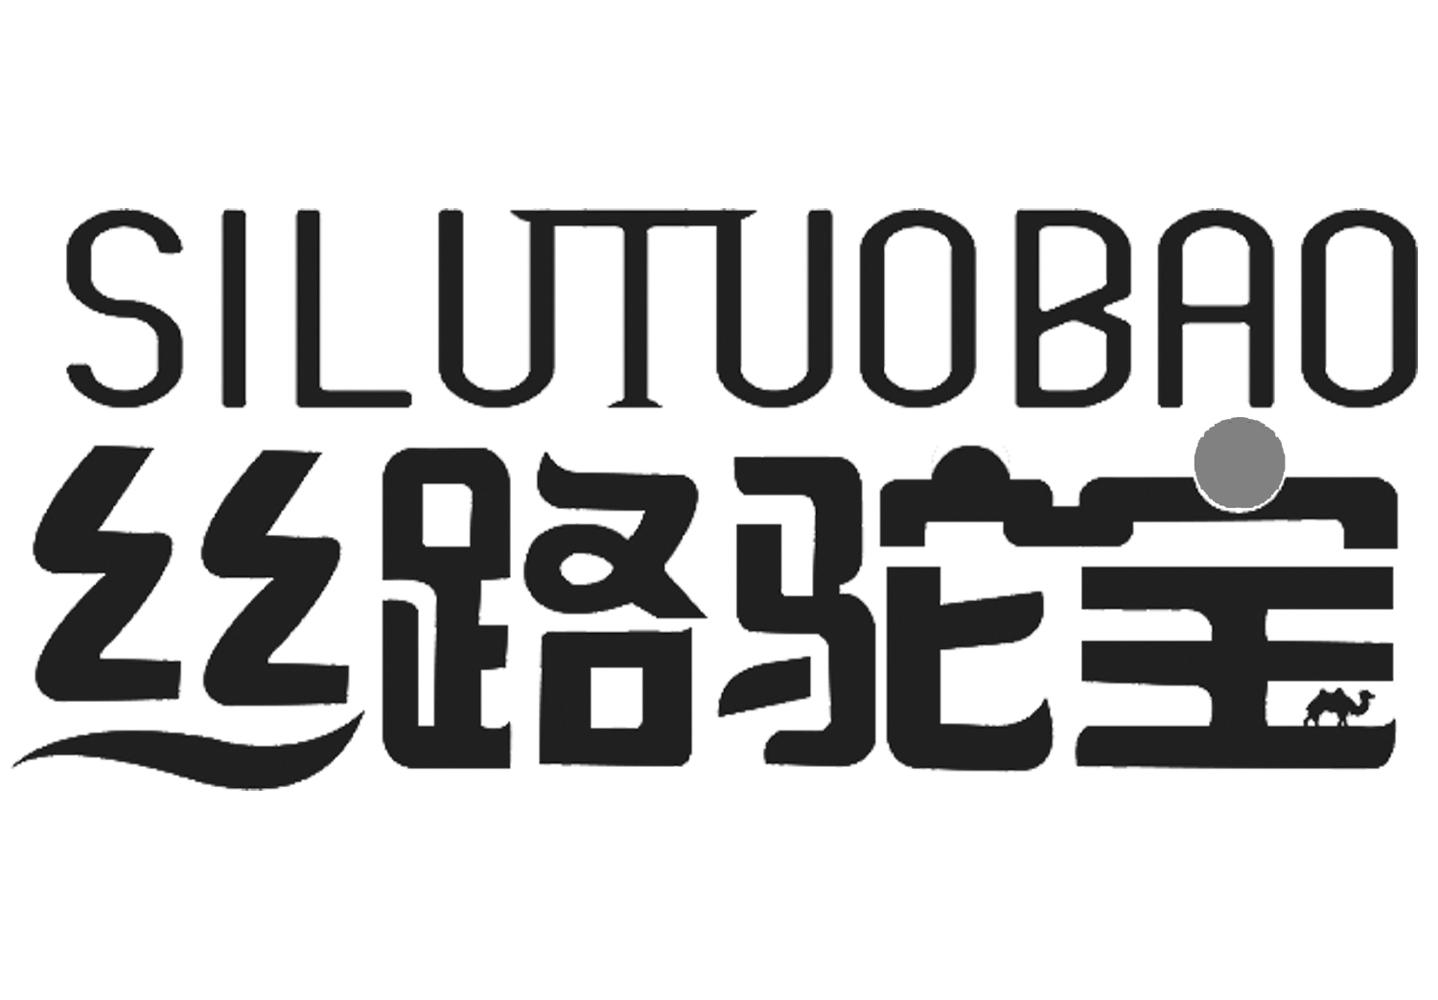 丝路驼宝logo图片